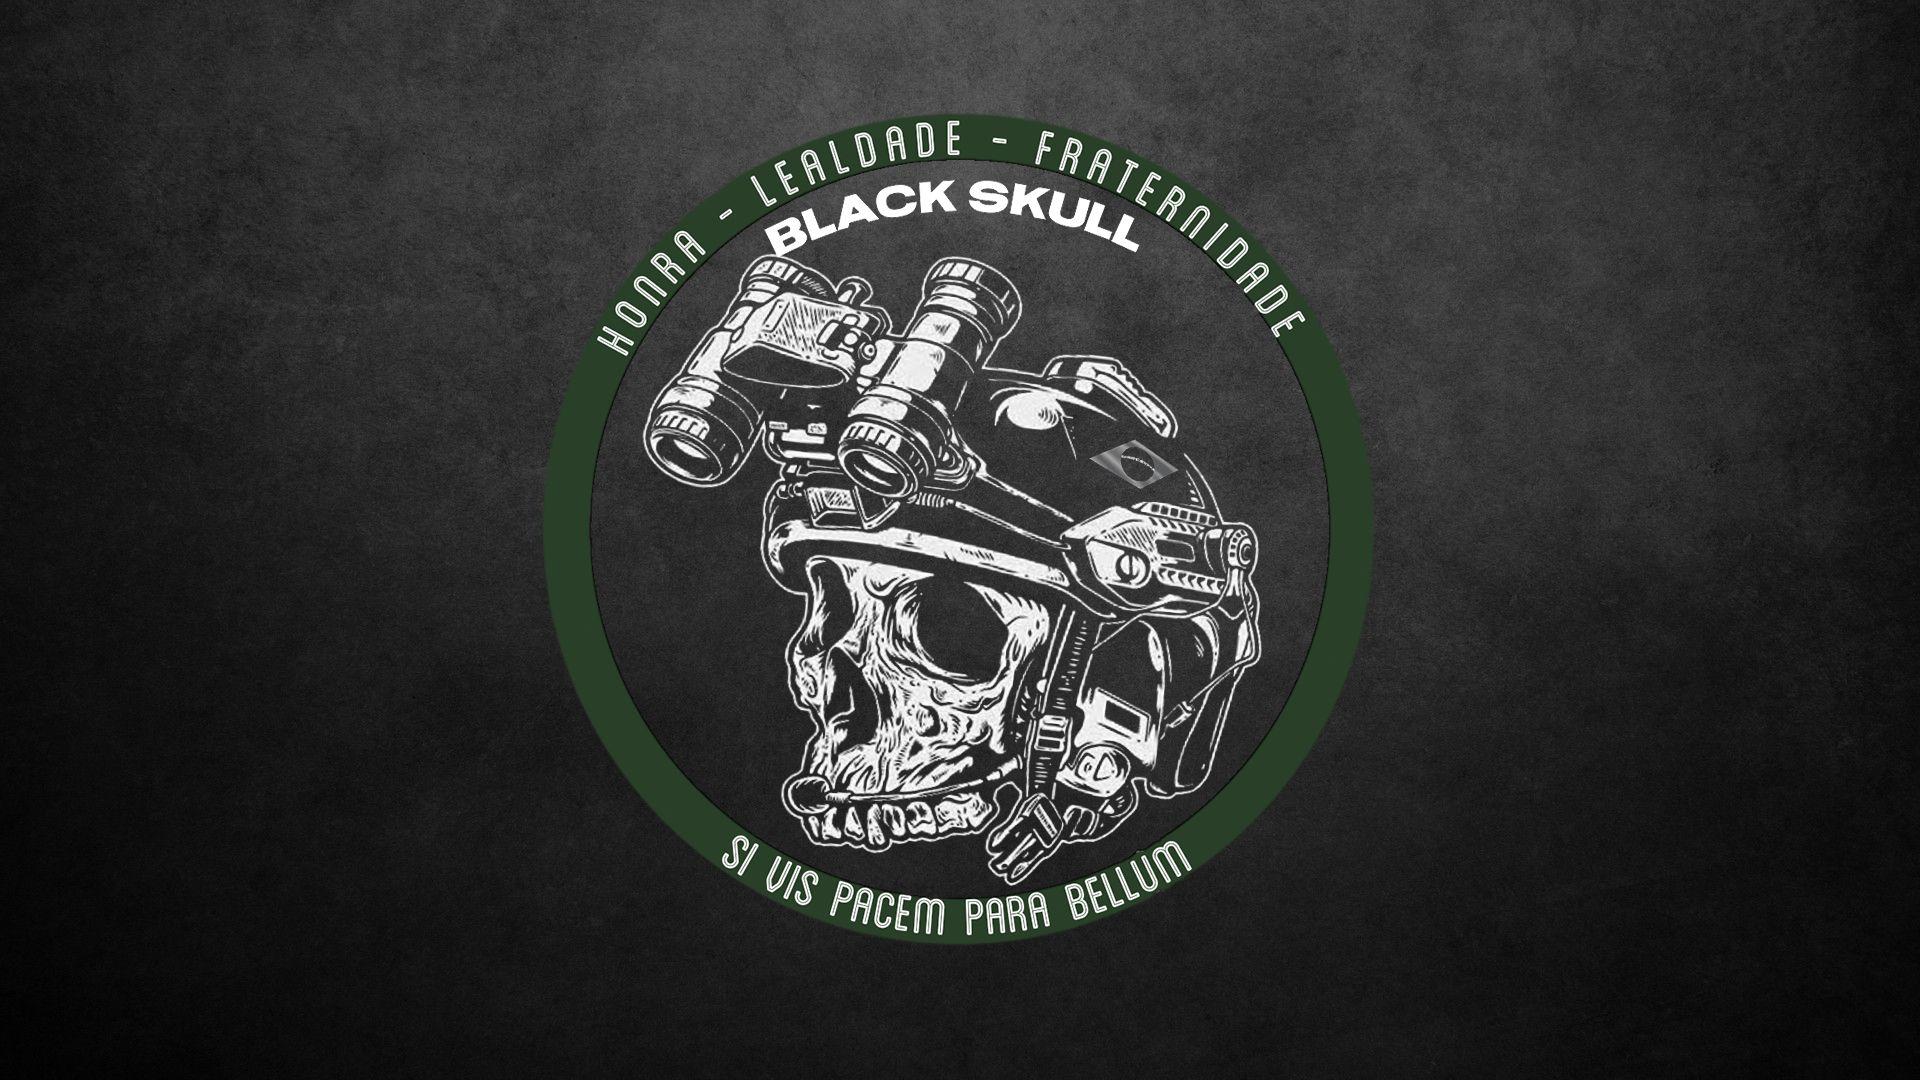 BlackSkull Core